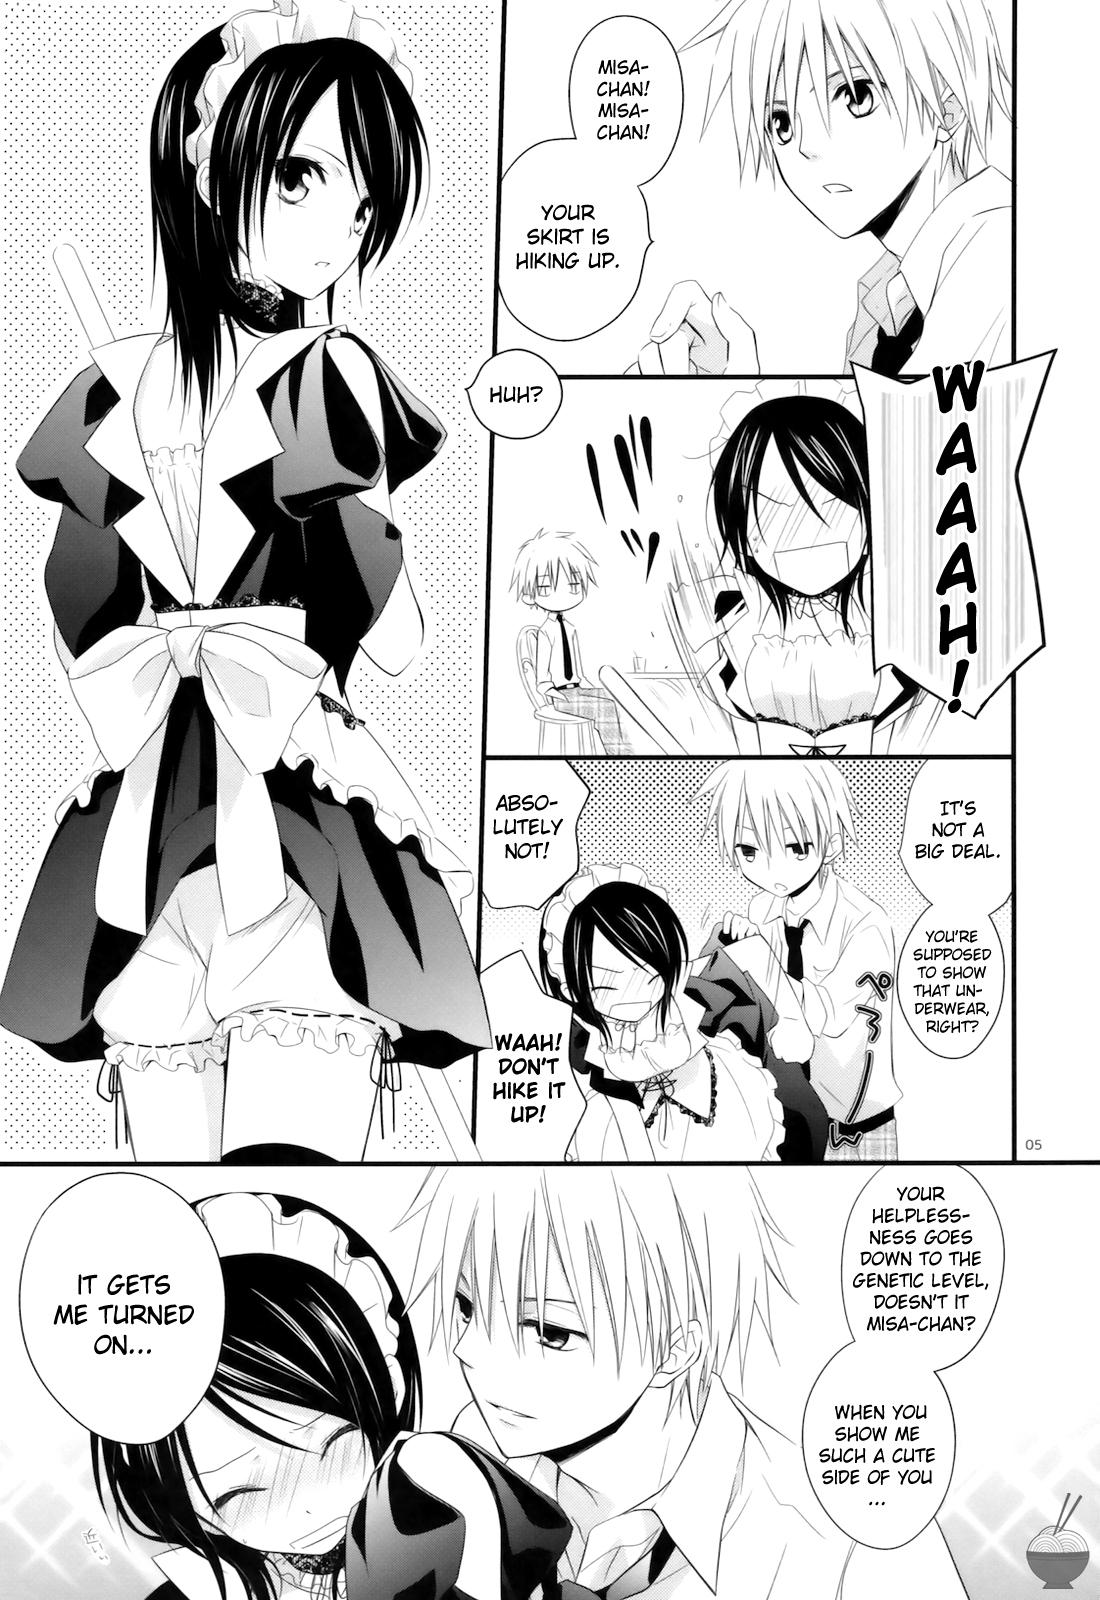 Fuck elle - Kaichou wa maid-sama Anime - Page 4